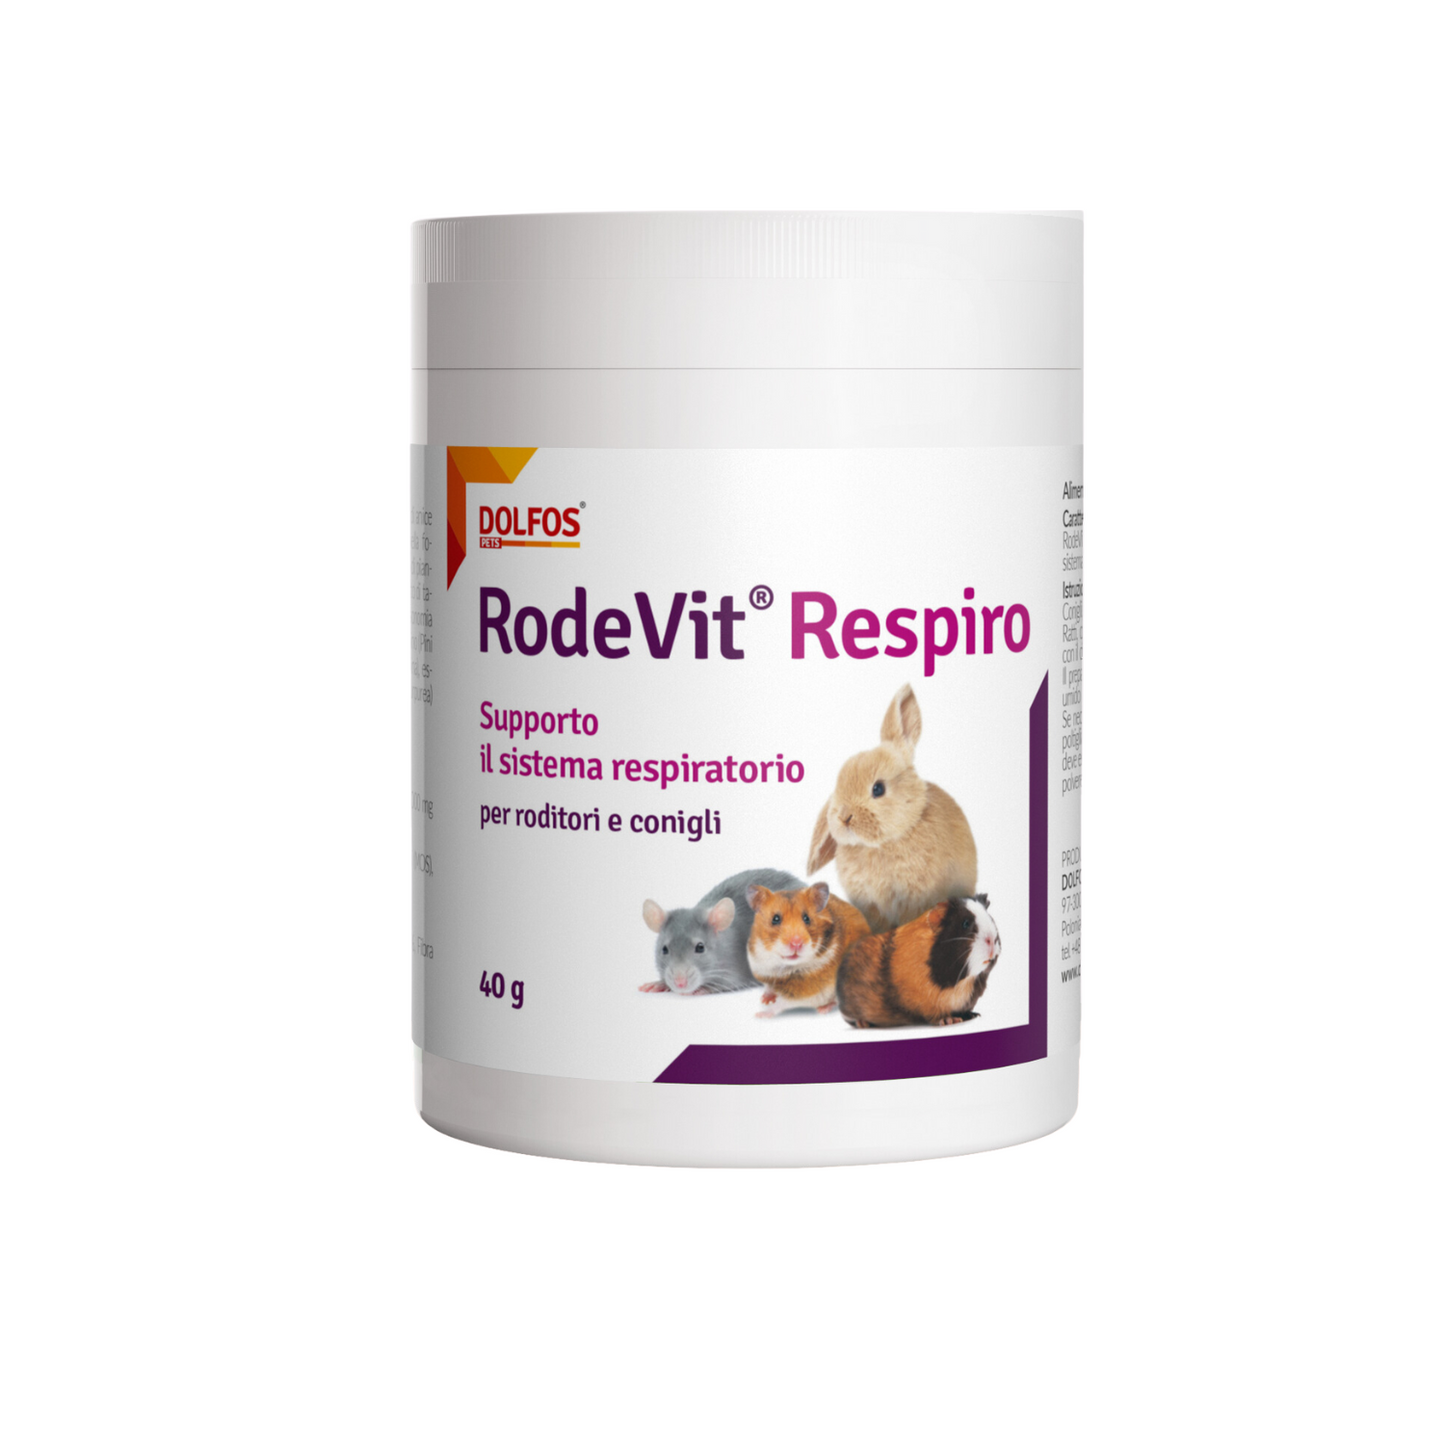 RodeVit Respiro 40 " .. supporto alle vie respiratorie di conigli e roditori ..."